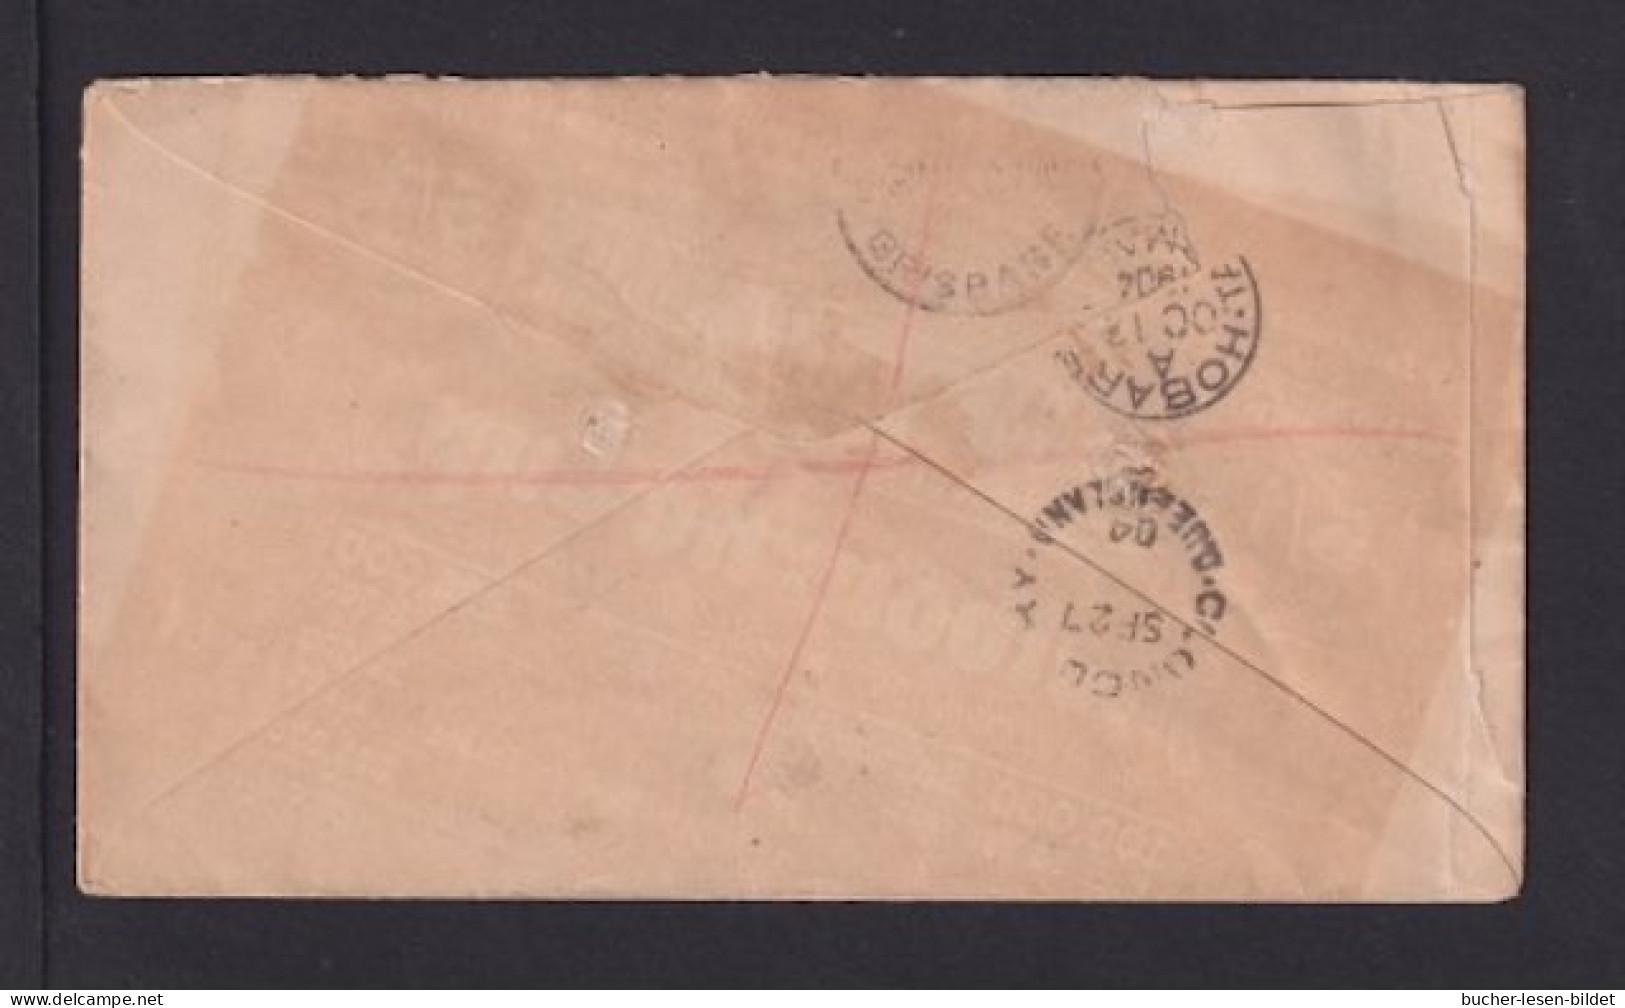 1904 - 1 P. Und 2x 2 P. Auf Einschreibbrief Ab CAMOOWEAL Nach Hobart - Briefe U. Dokumente